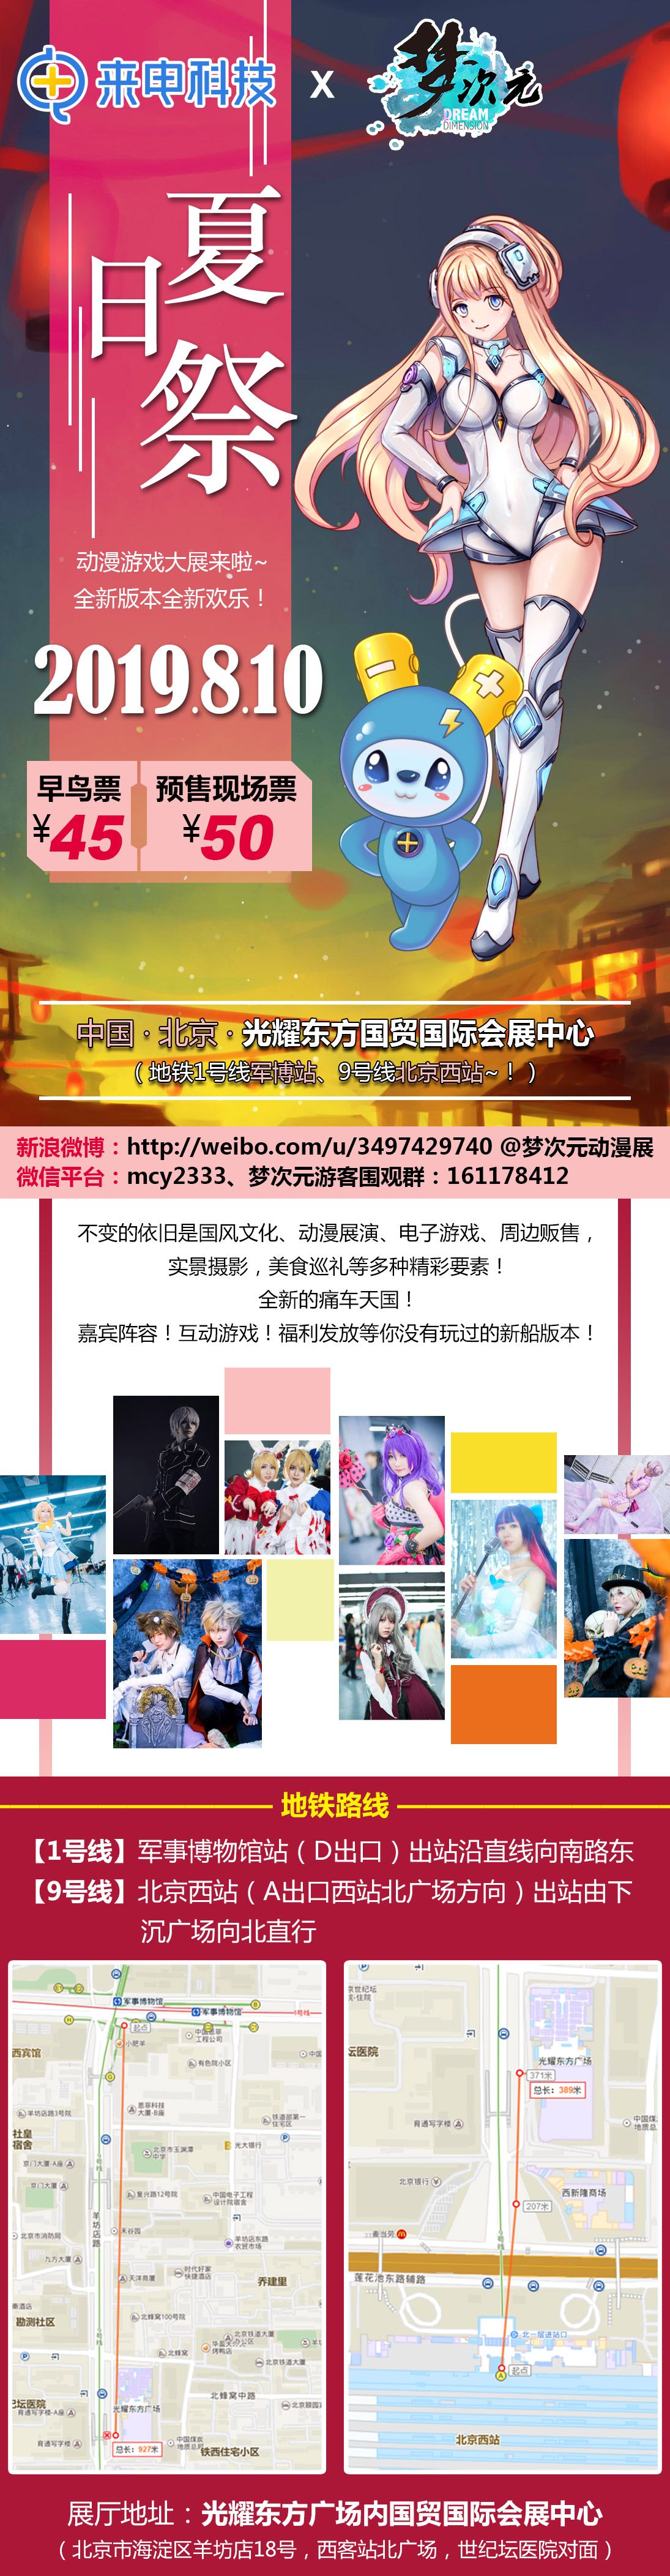 2019 北京 8 月 10 日 M22 梦次元夏日祭动漫游戏展